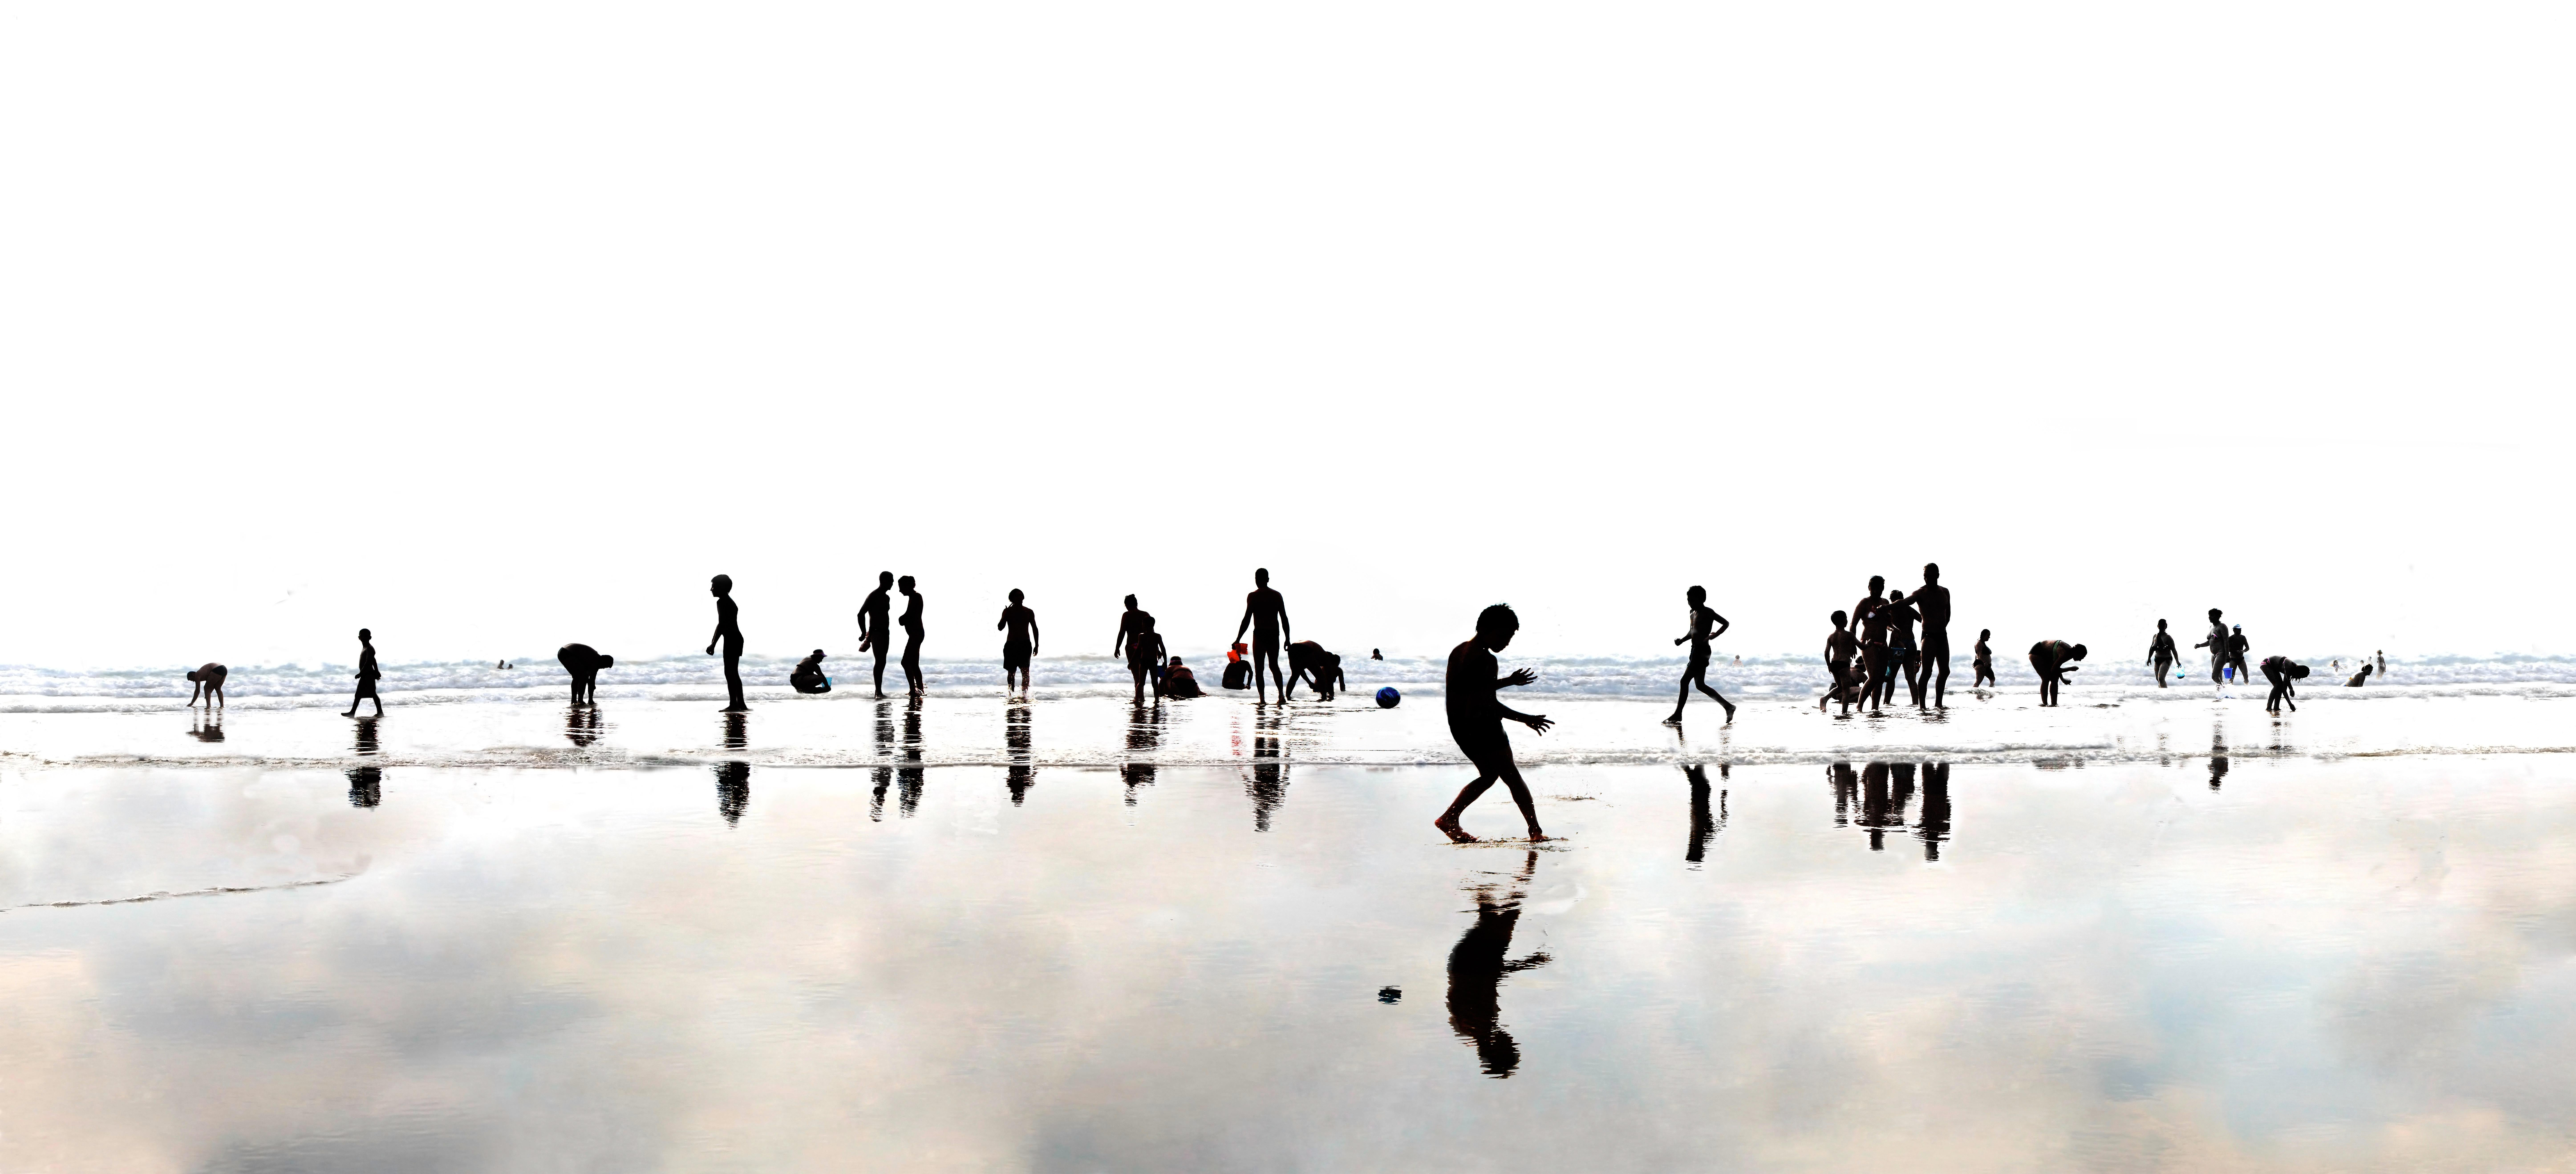 Plage 99 - Photographie de paysages de plage du 21e siècle, contemporaine